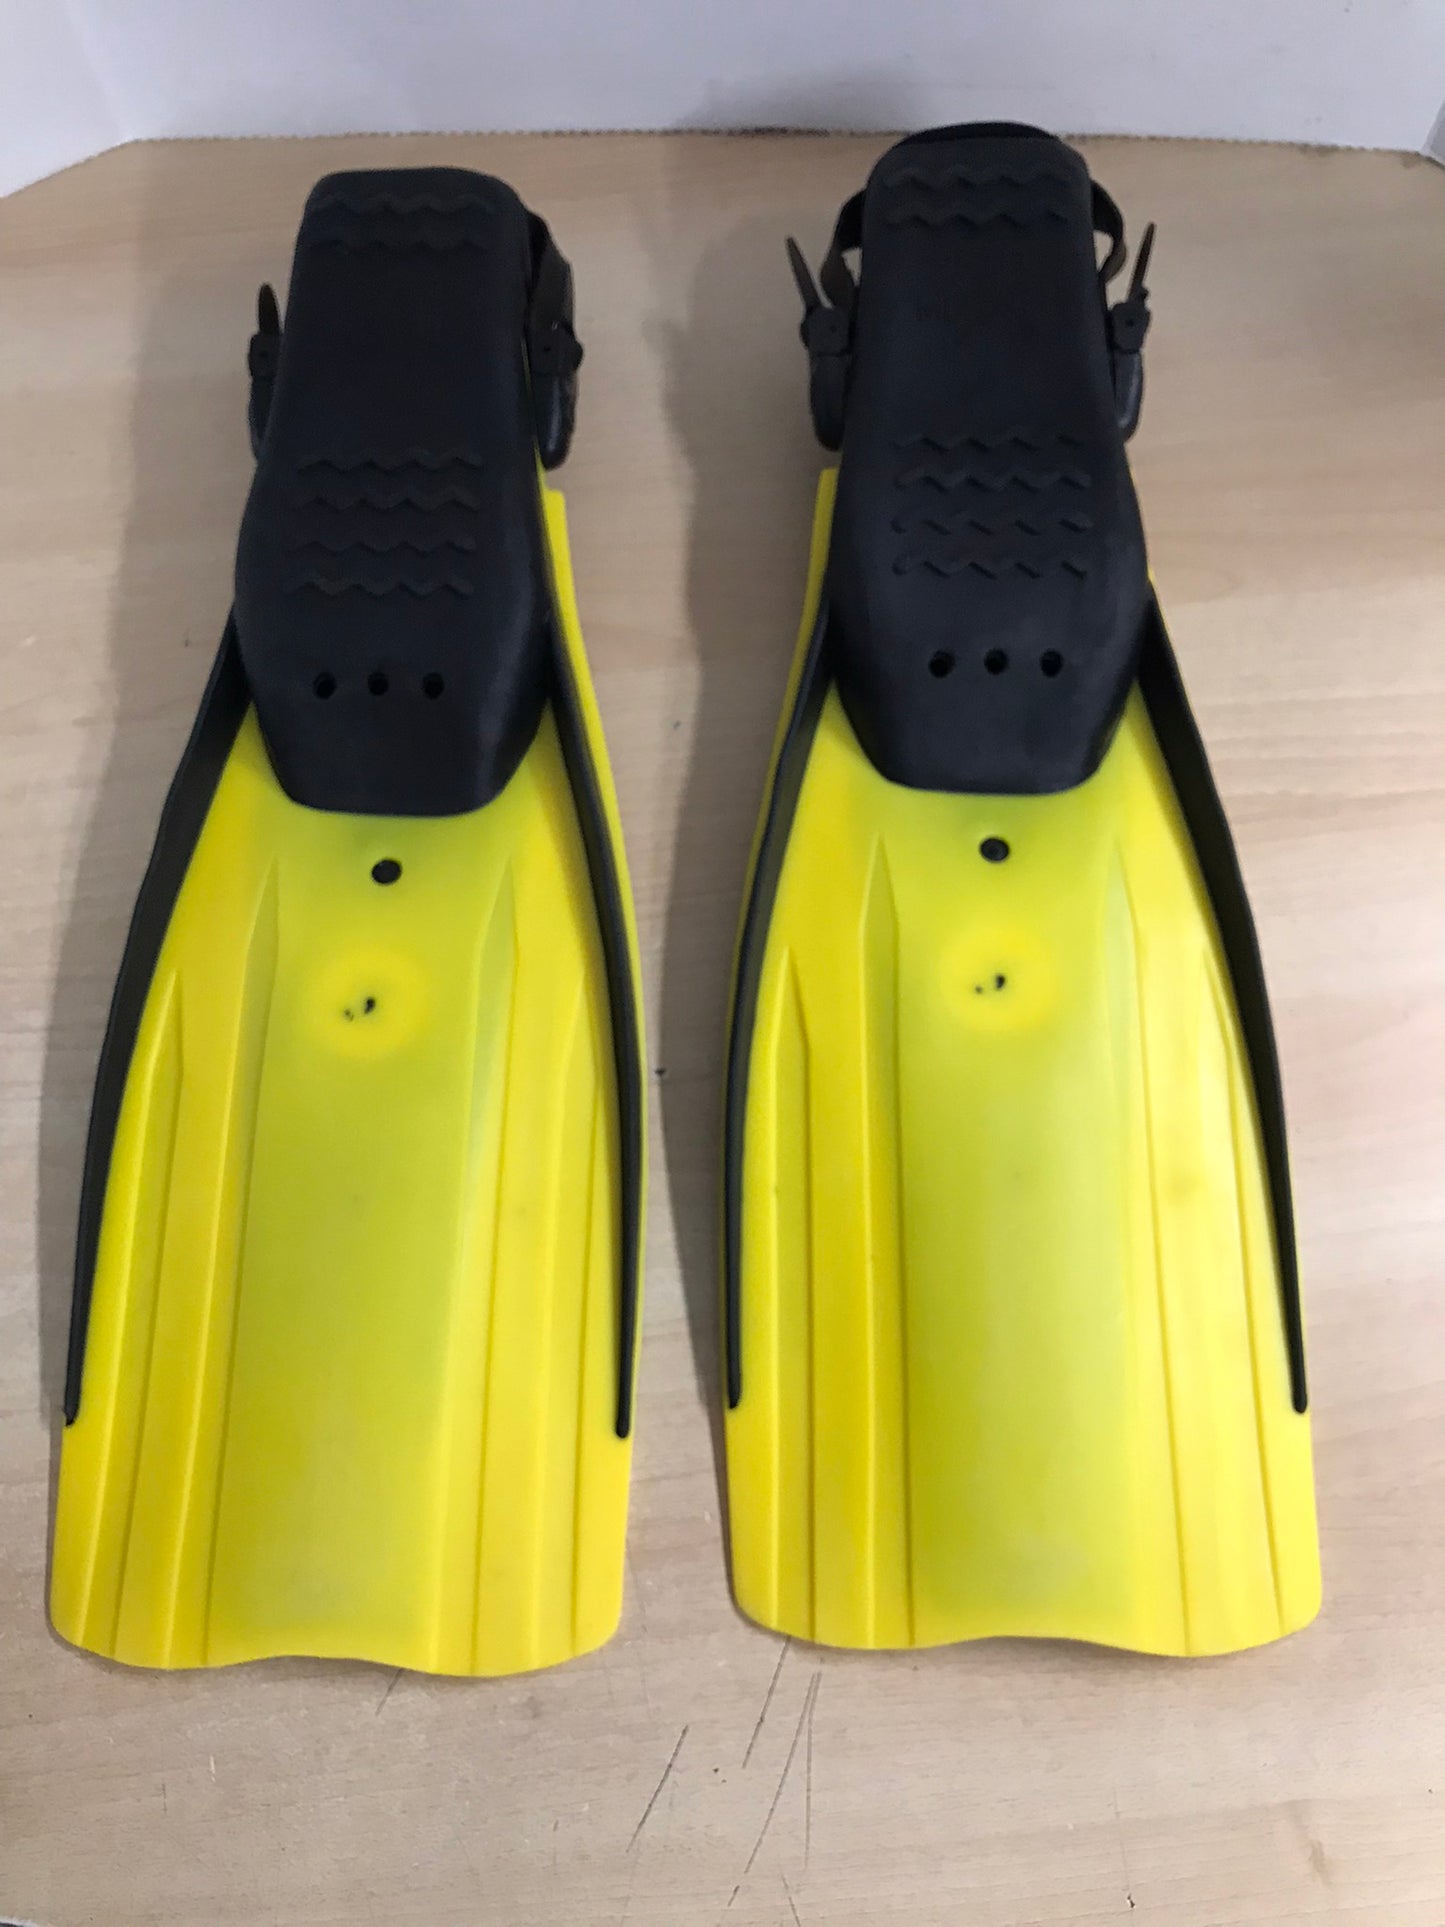 Snorkel Dive Fins Men's Size 9-13 U.S. Divers Yellow Black As New Excellent